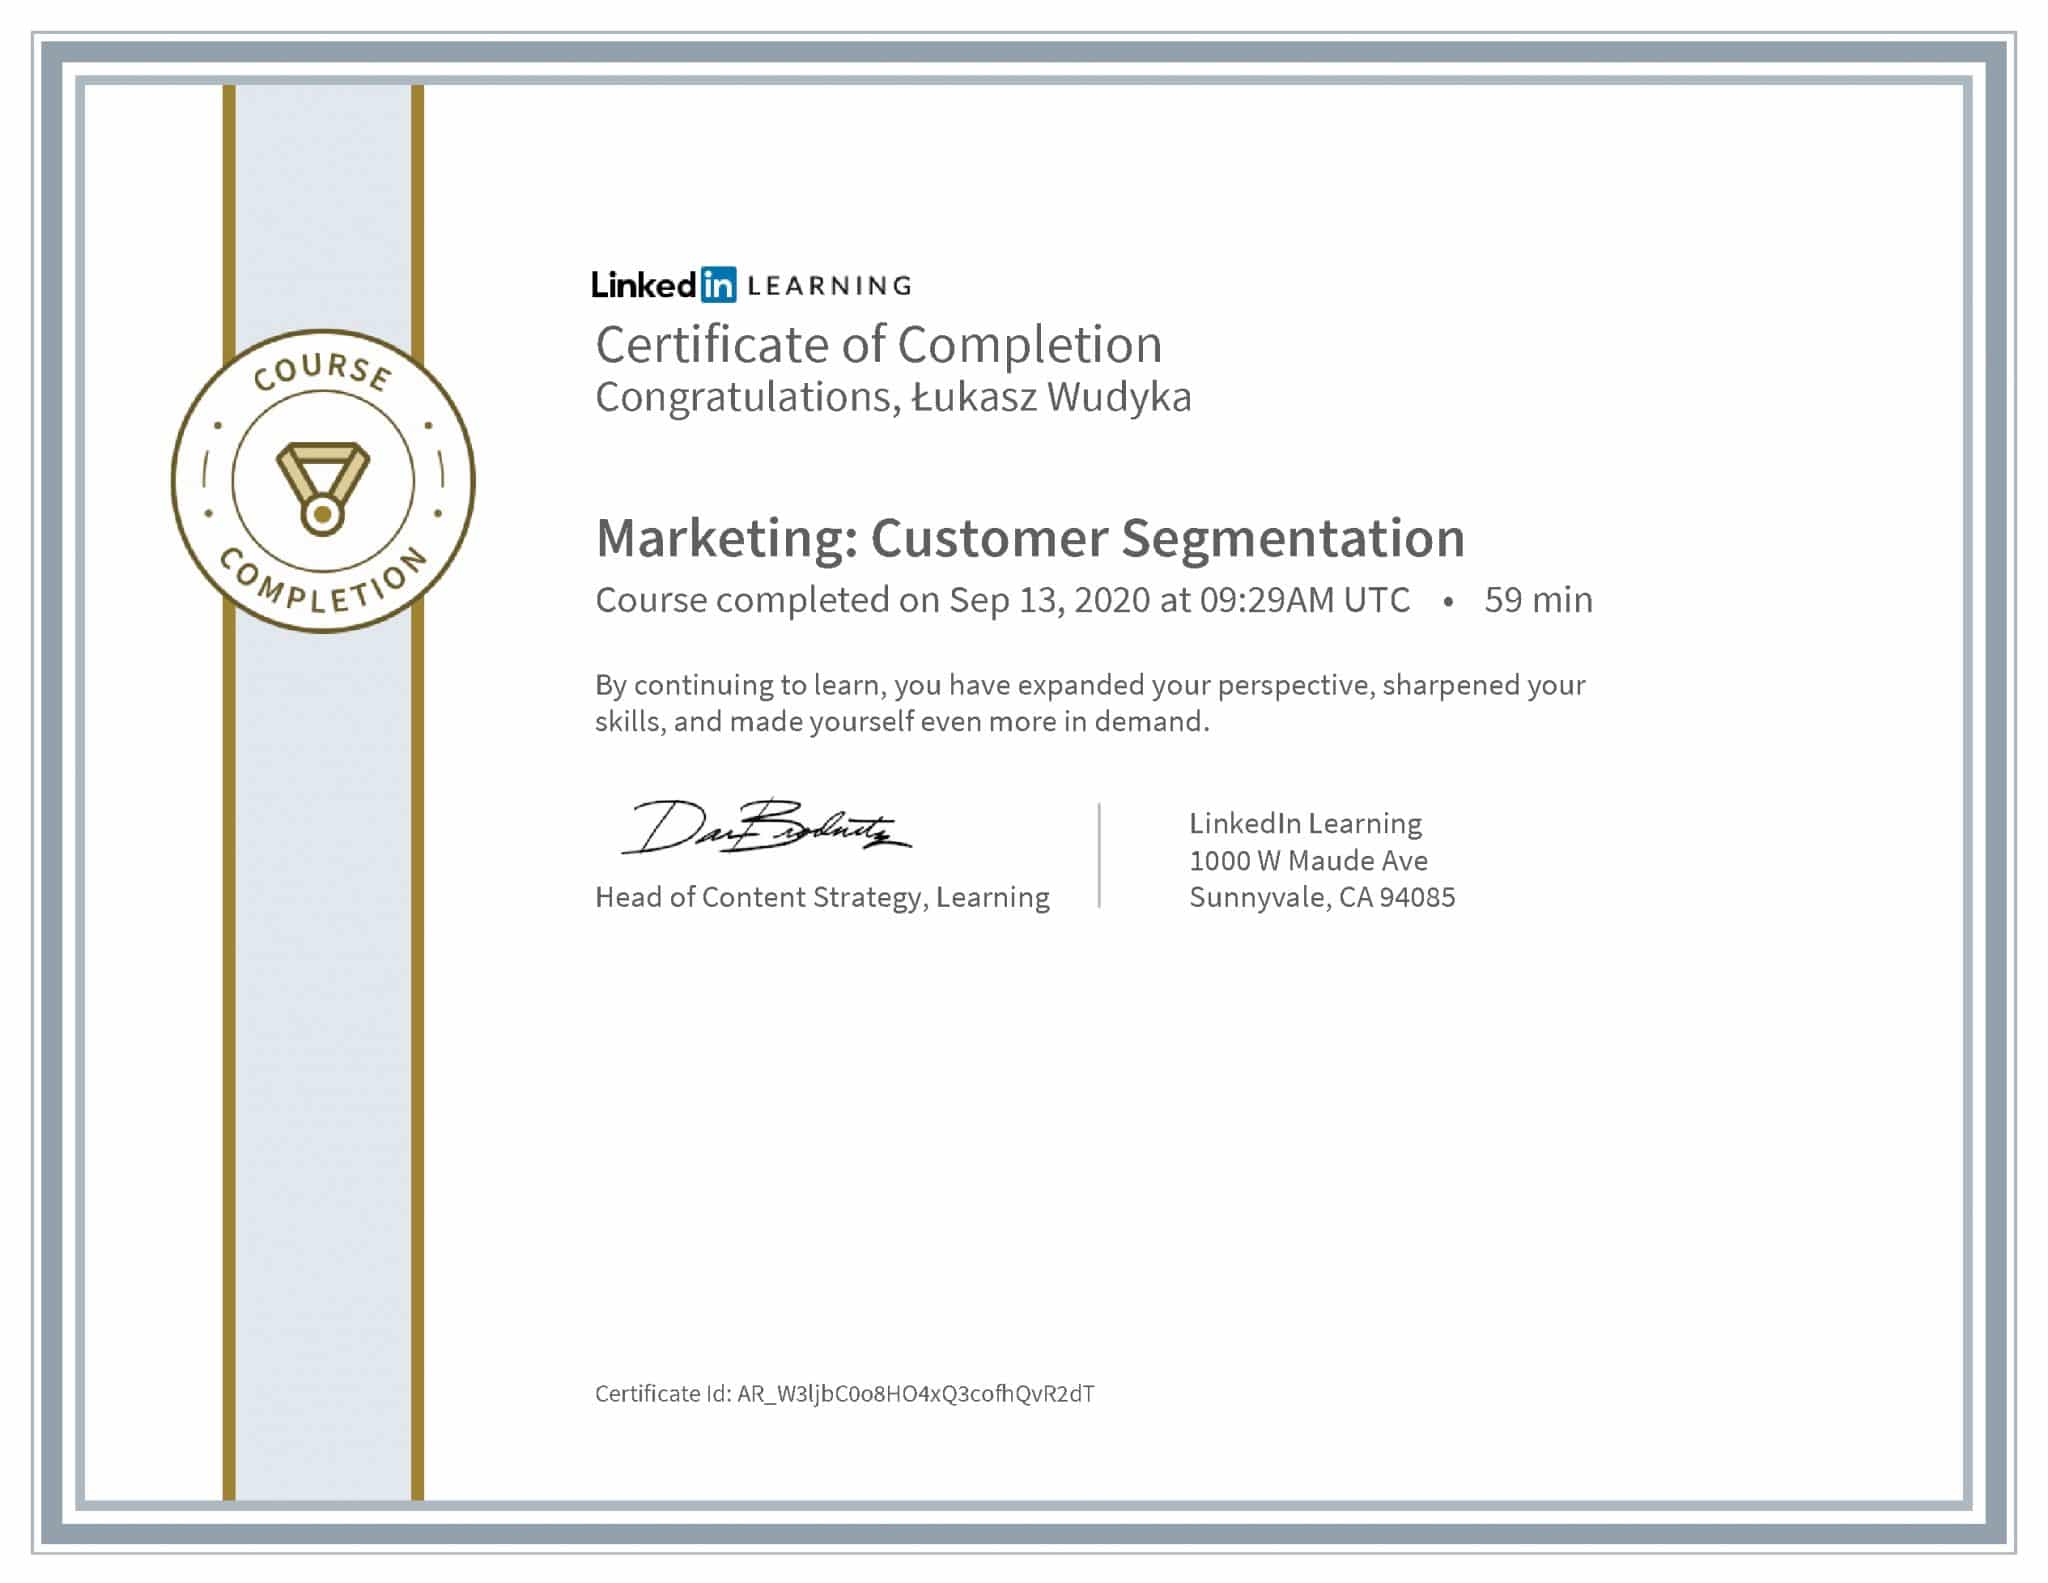 Łukasz Wudyka certyfikat LinkedIn Marketing: Customer Segmentation